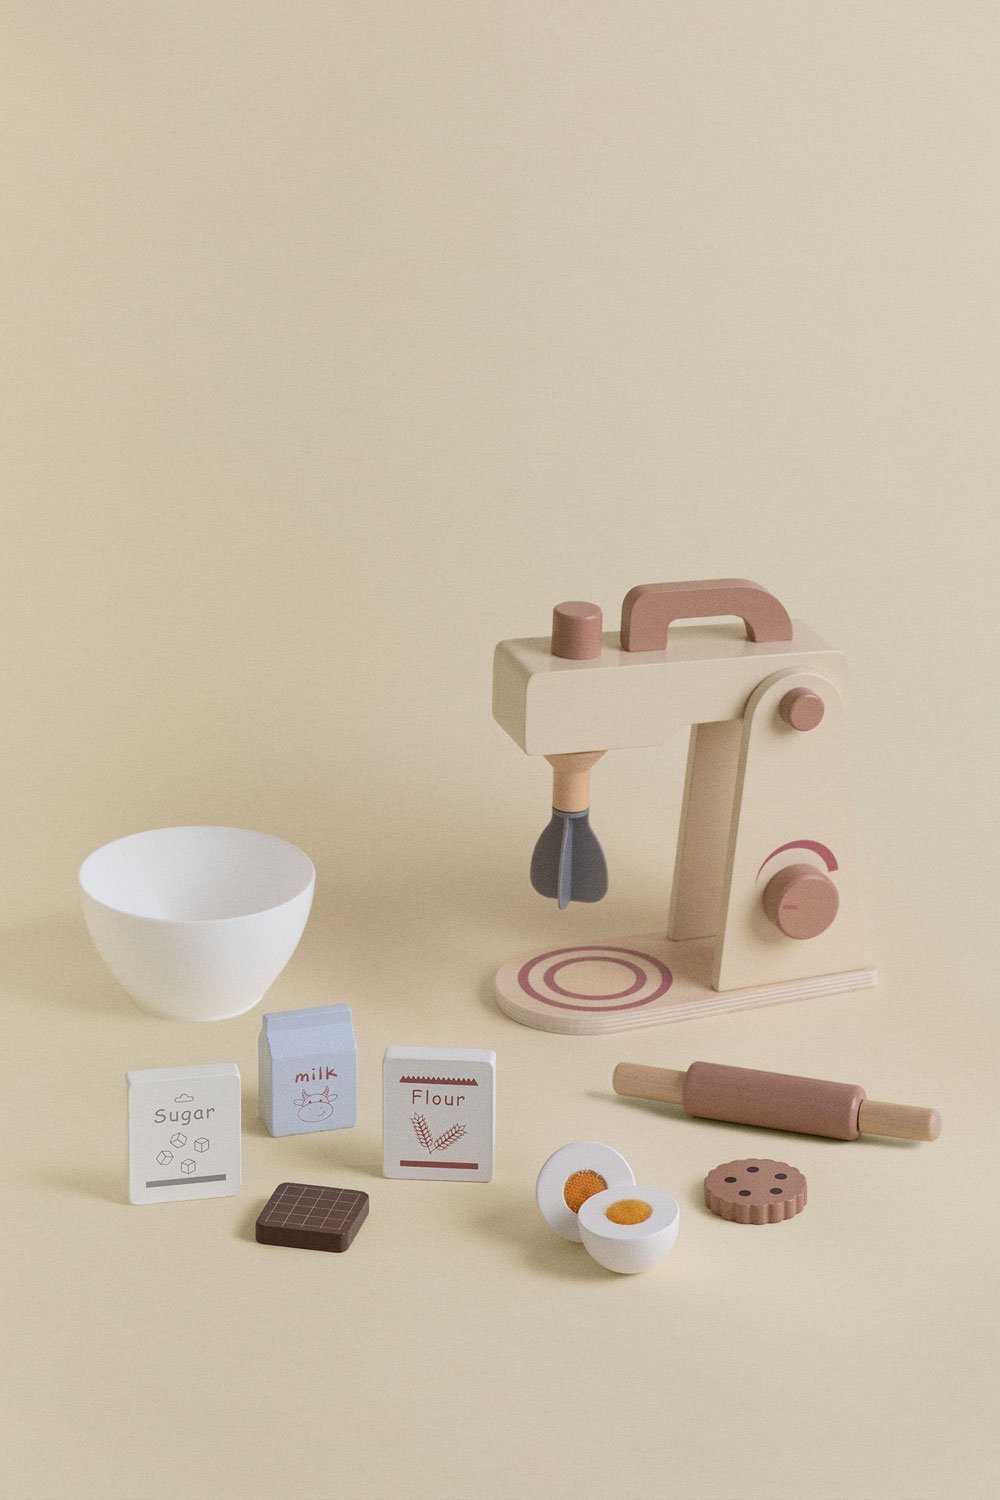 Mixeur de cuisine en bois - Set de pâtisserie pour enfant